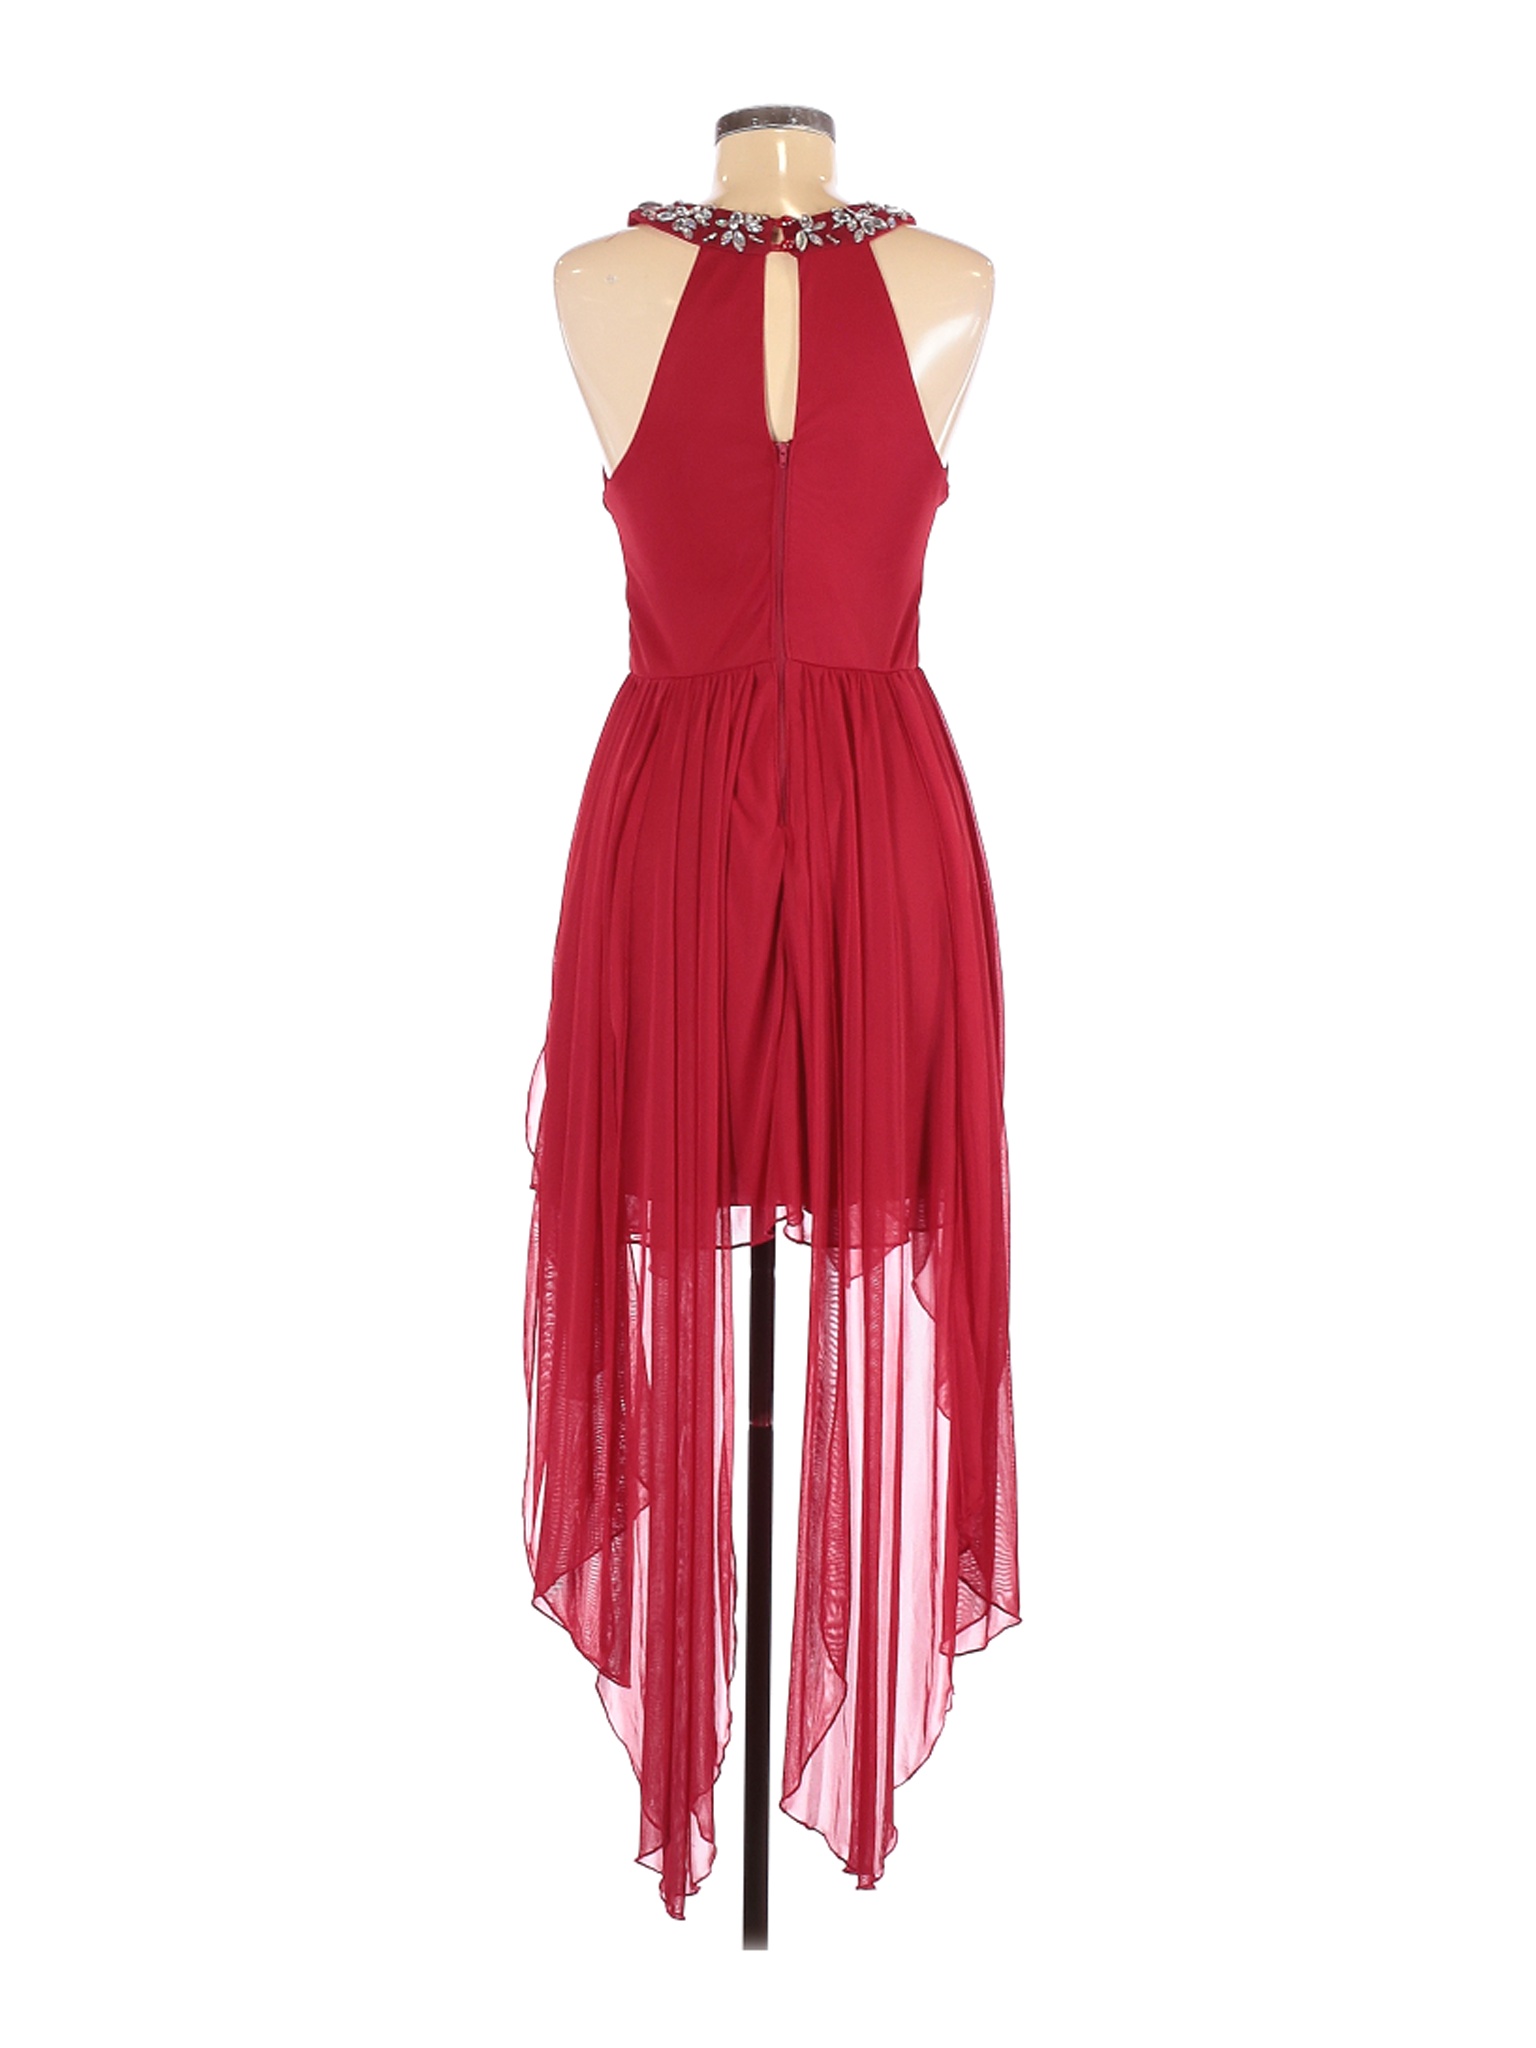 My Michelle Women Red Cocktail Dress 7 | eBay